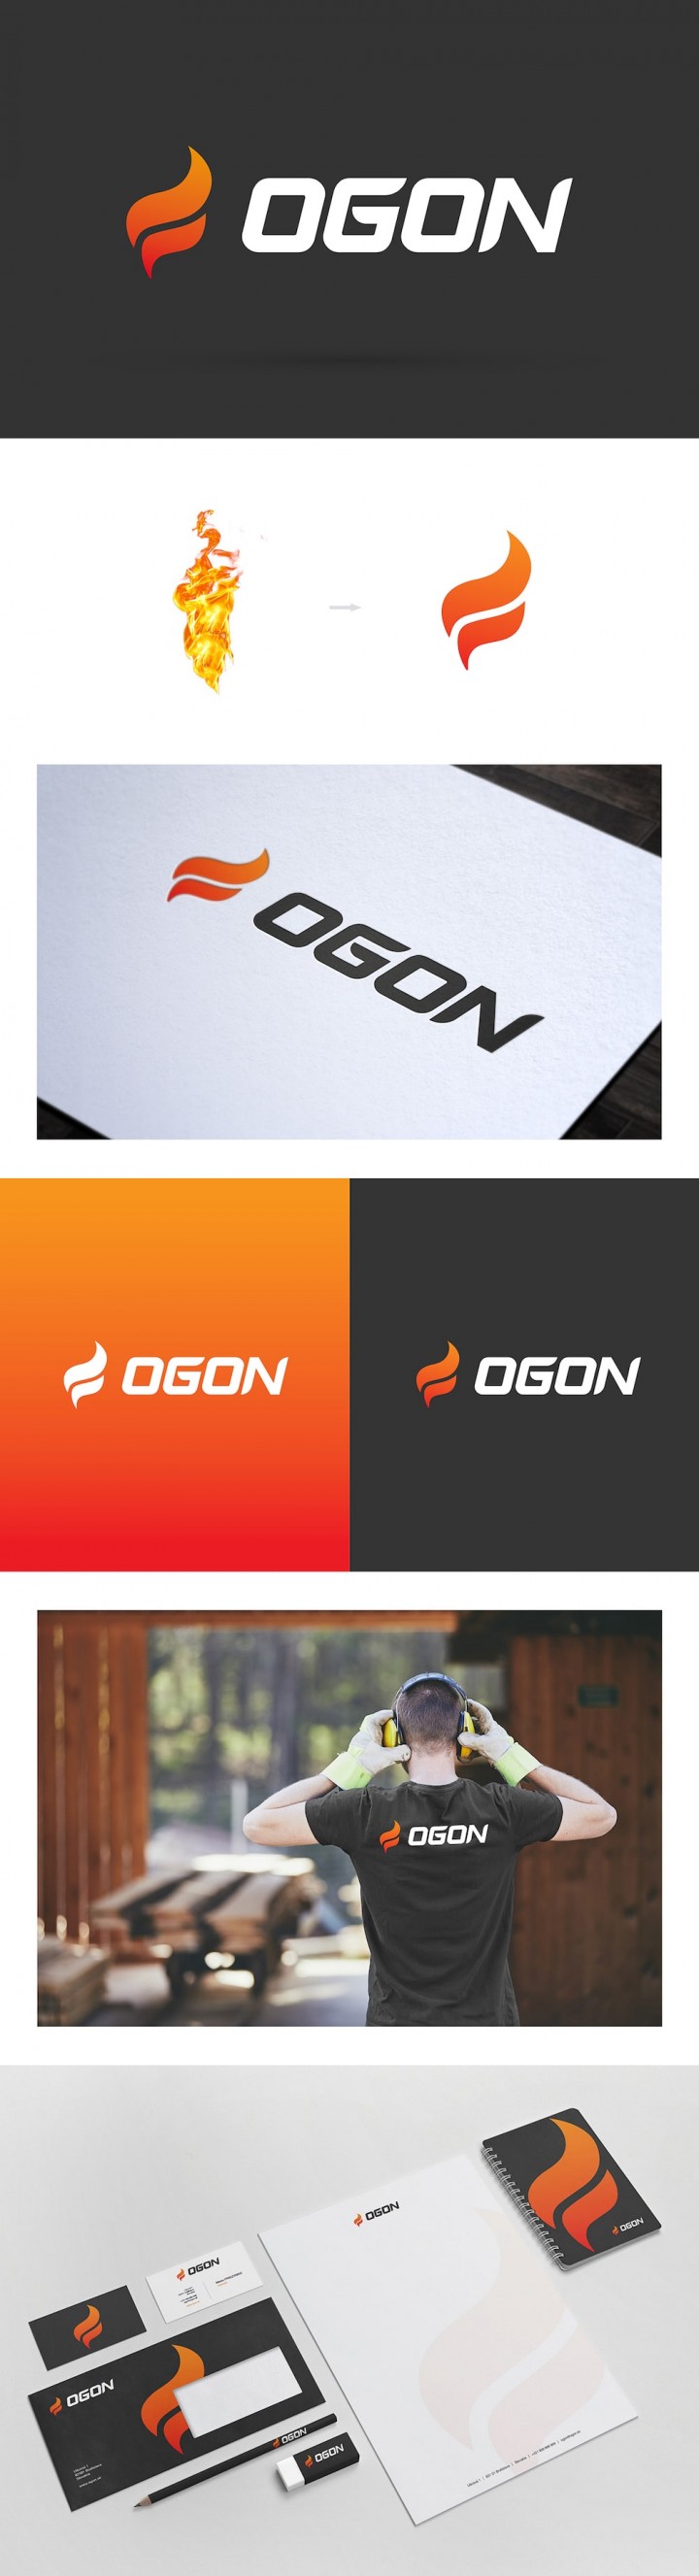 Ogon